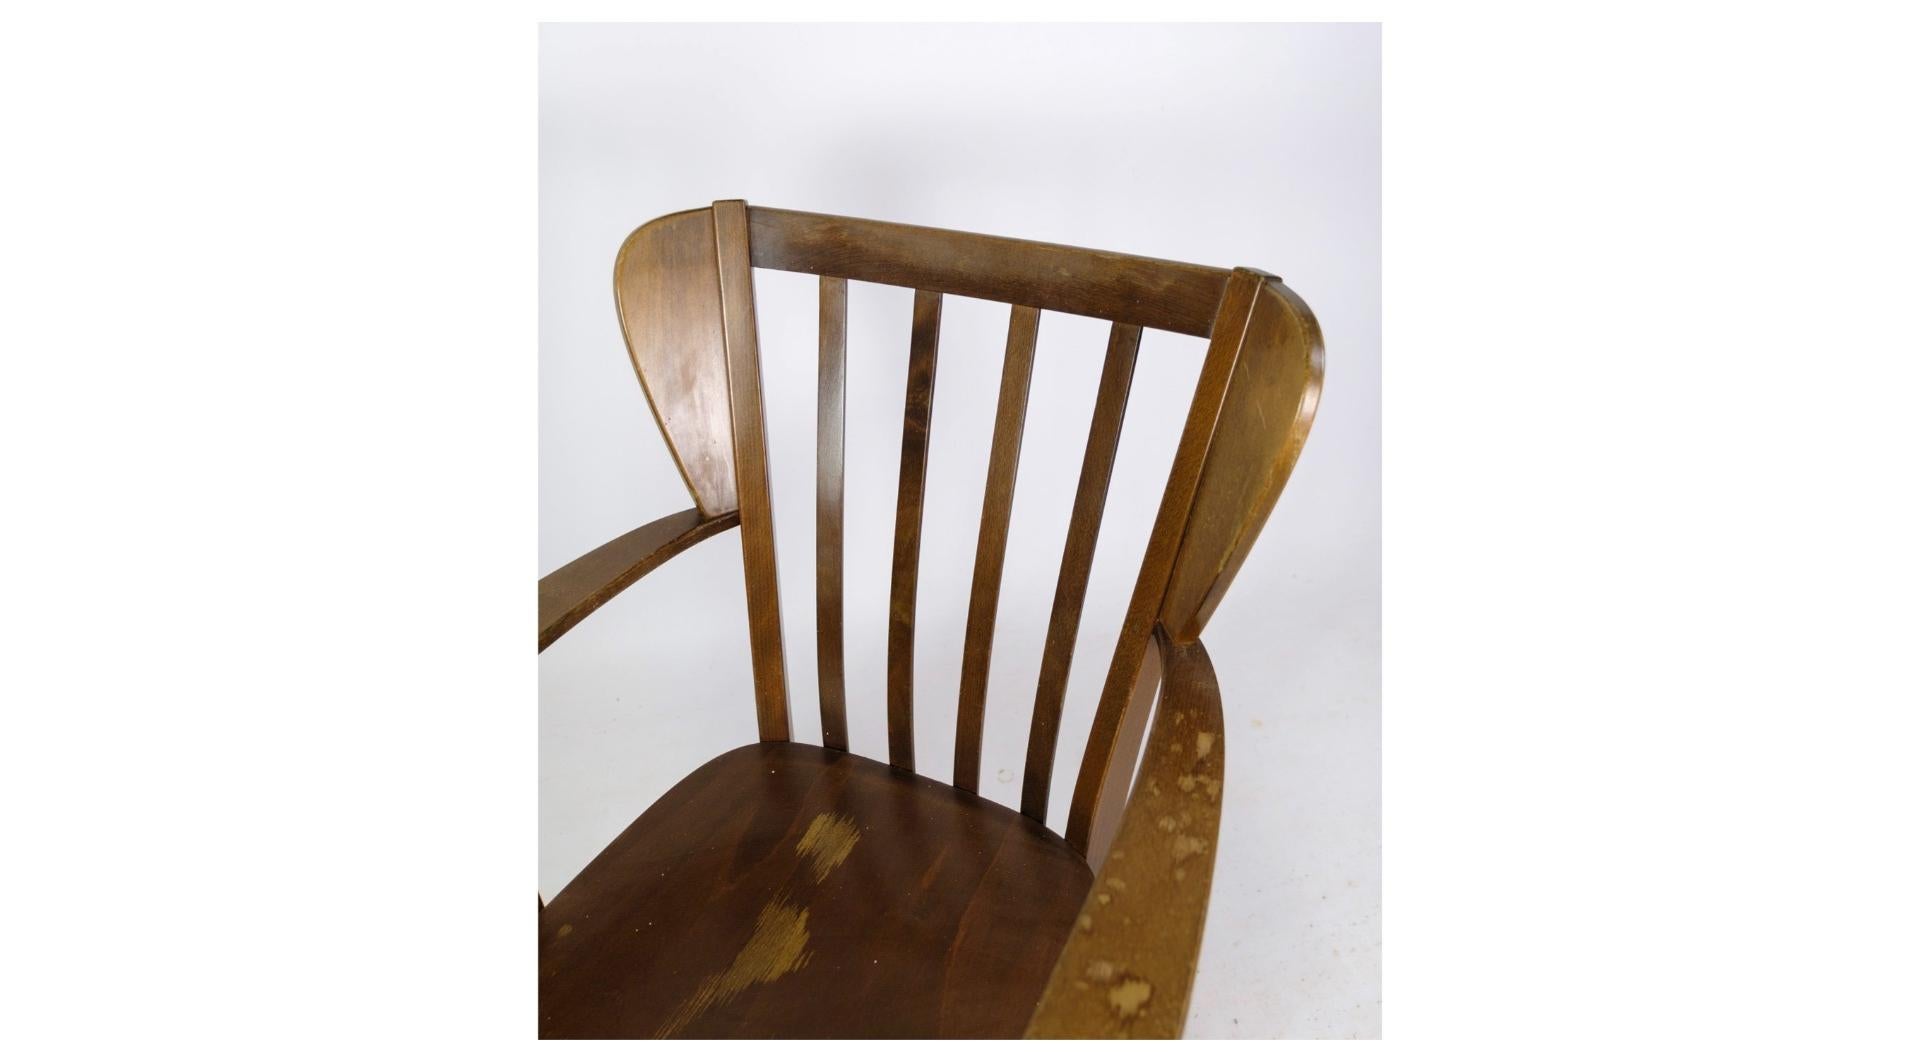 Der in den 1940er Jahren gefertigte Stuhl Canada, Modell 2252, zeigt die zeitlose Eleganz des dänischen Designs. Dieser von Søren Hansen entworfene und von Fritz Hansen sorgfältig hergestellte Stuhl verkörpert die für moderne Möbel der